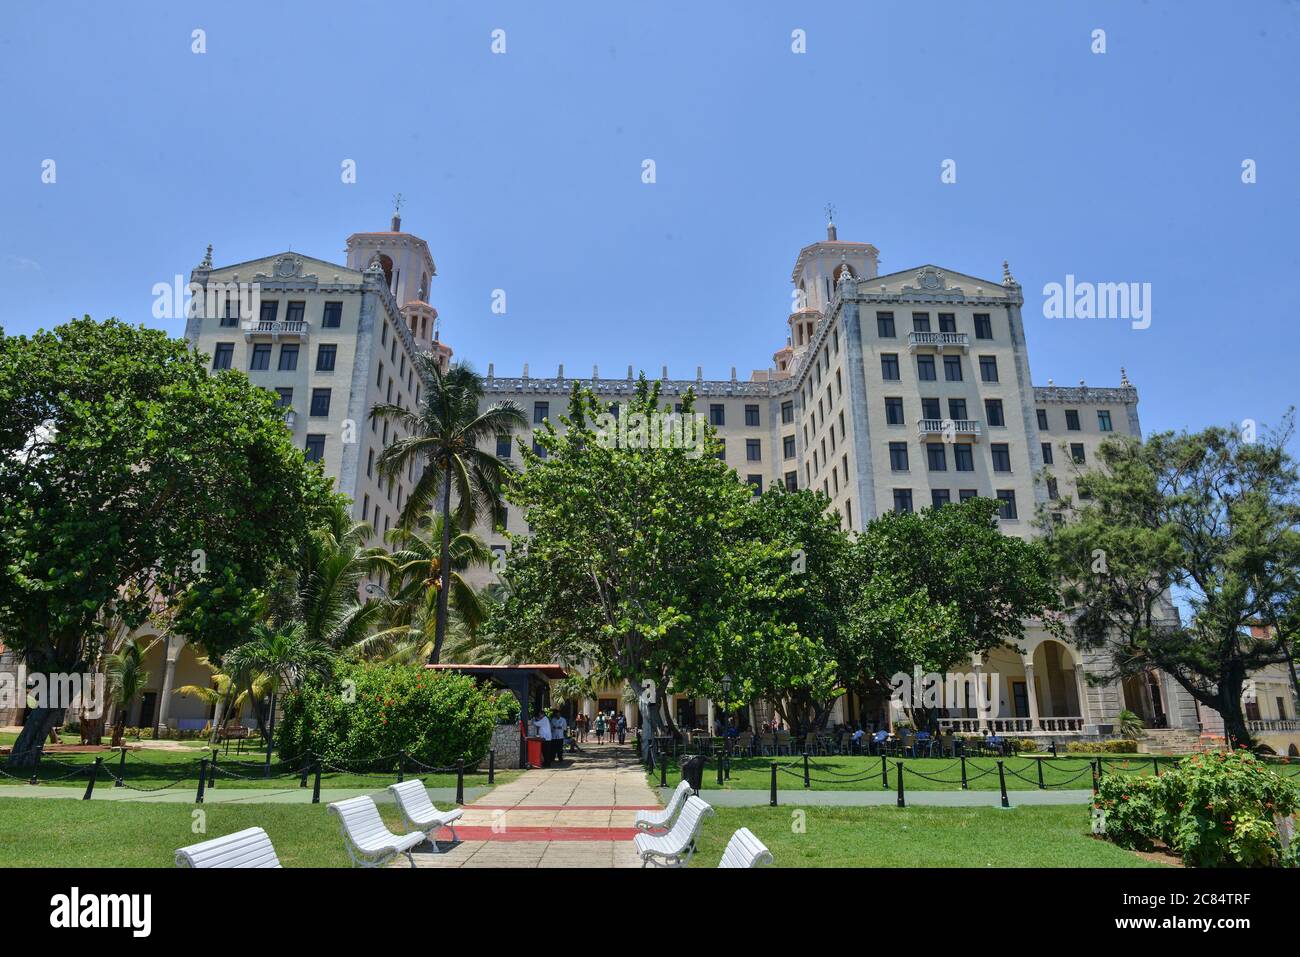 Cuba, la Havane: Hotel Nacional de Cuba, palais cinq étoiles inauguré le 30 décembre 1930, emblème de l'architecture cubaine à l'époque, inscrit à l'ONU Banque D'Images